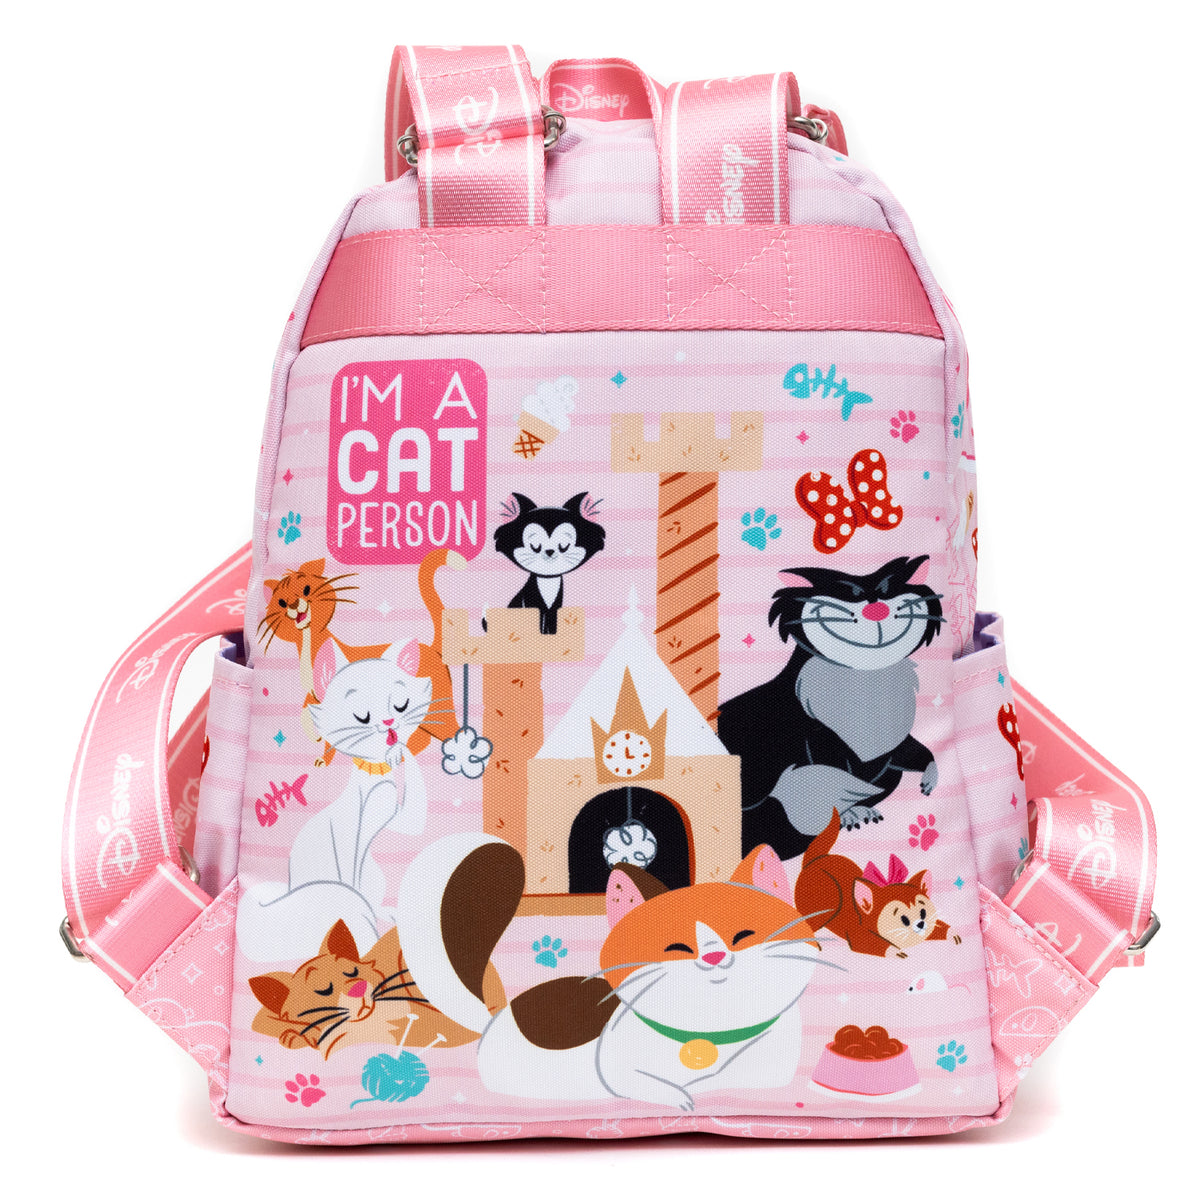 Disney Cats Park Day Nylon Mini Backpack